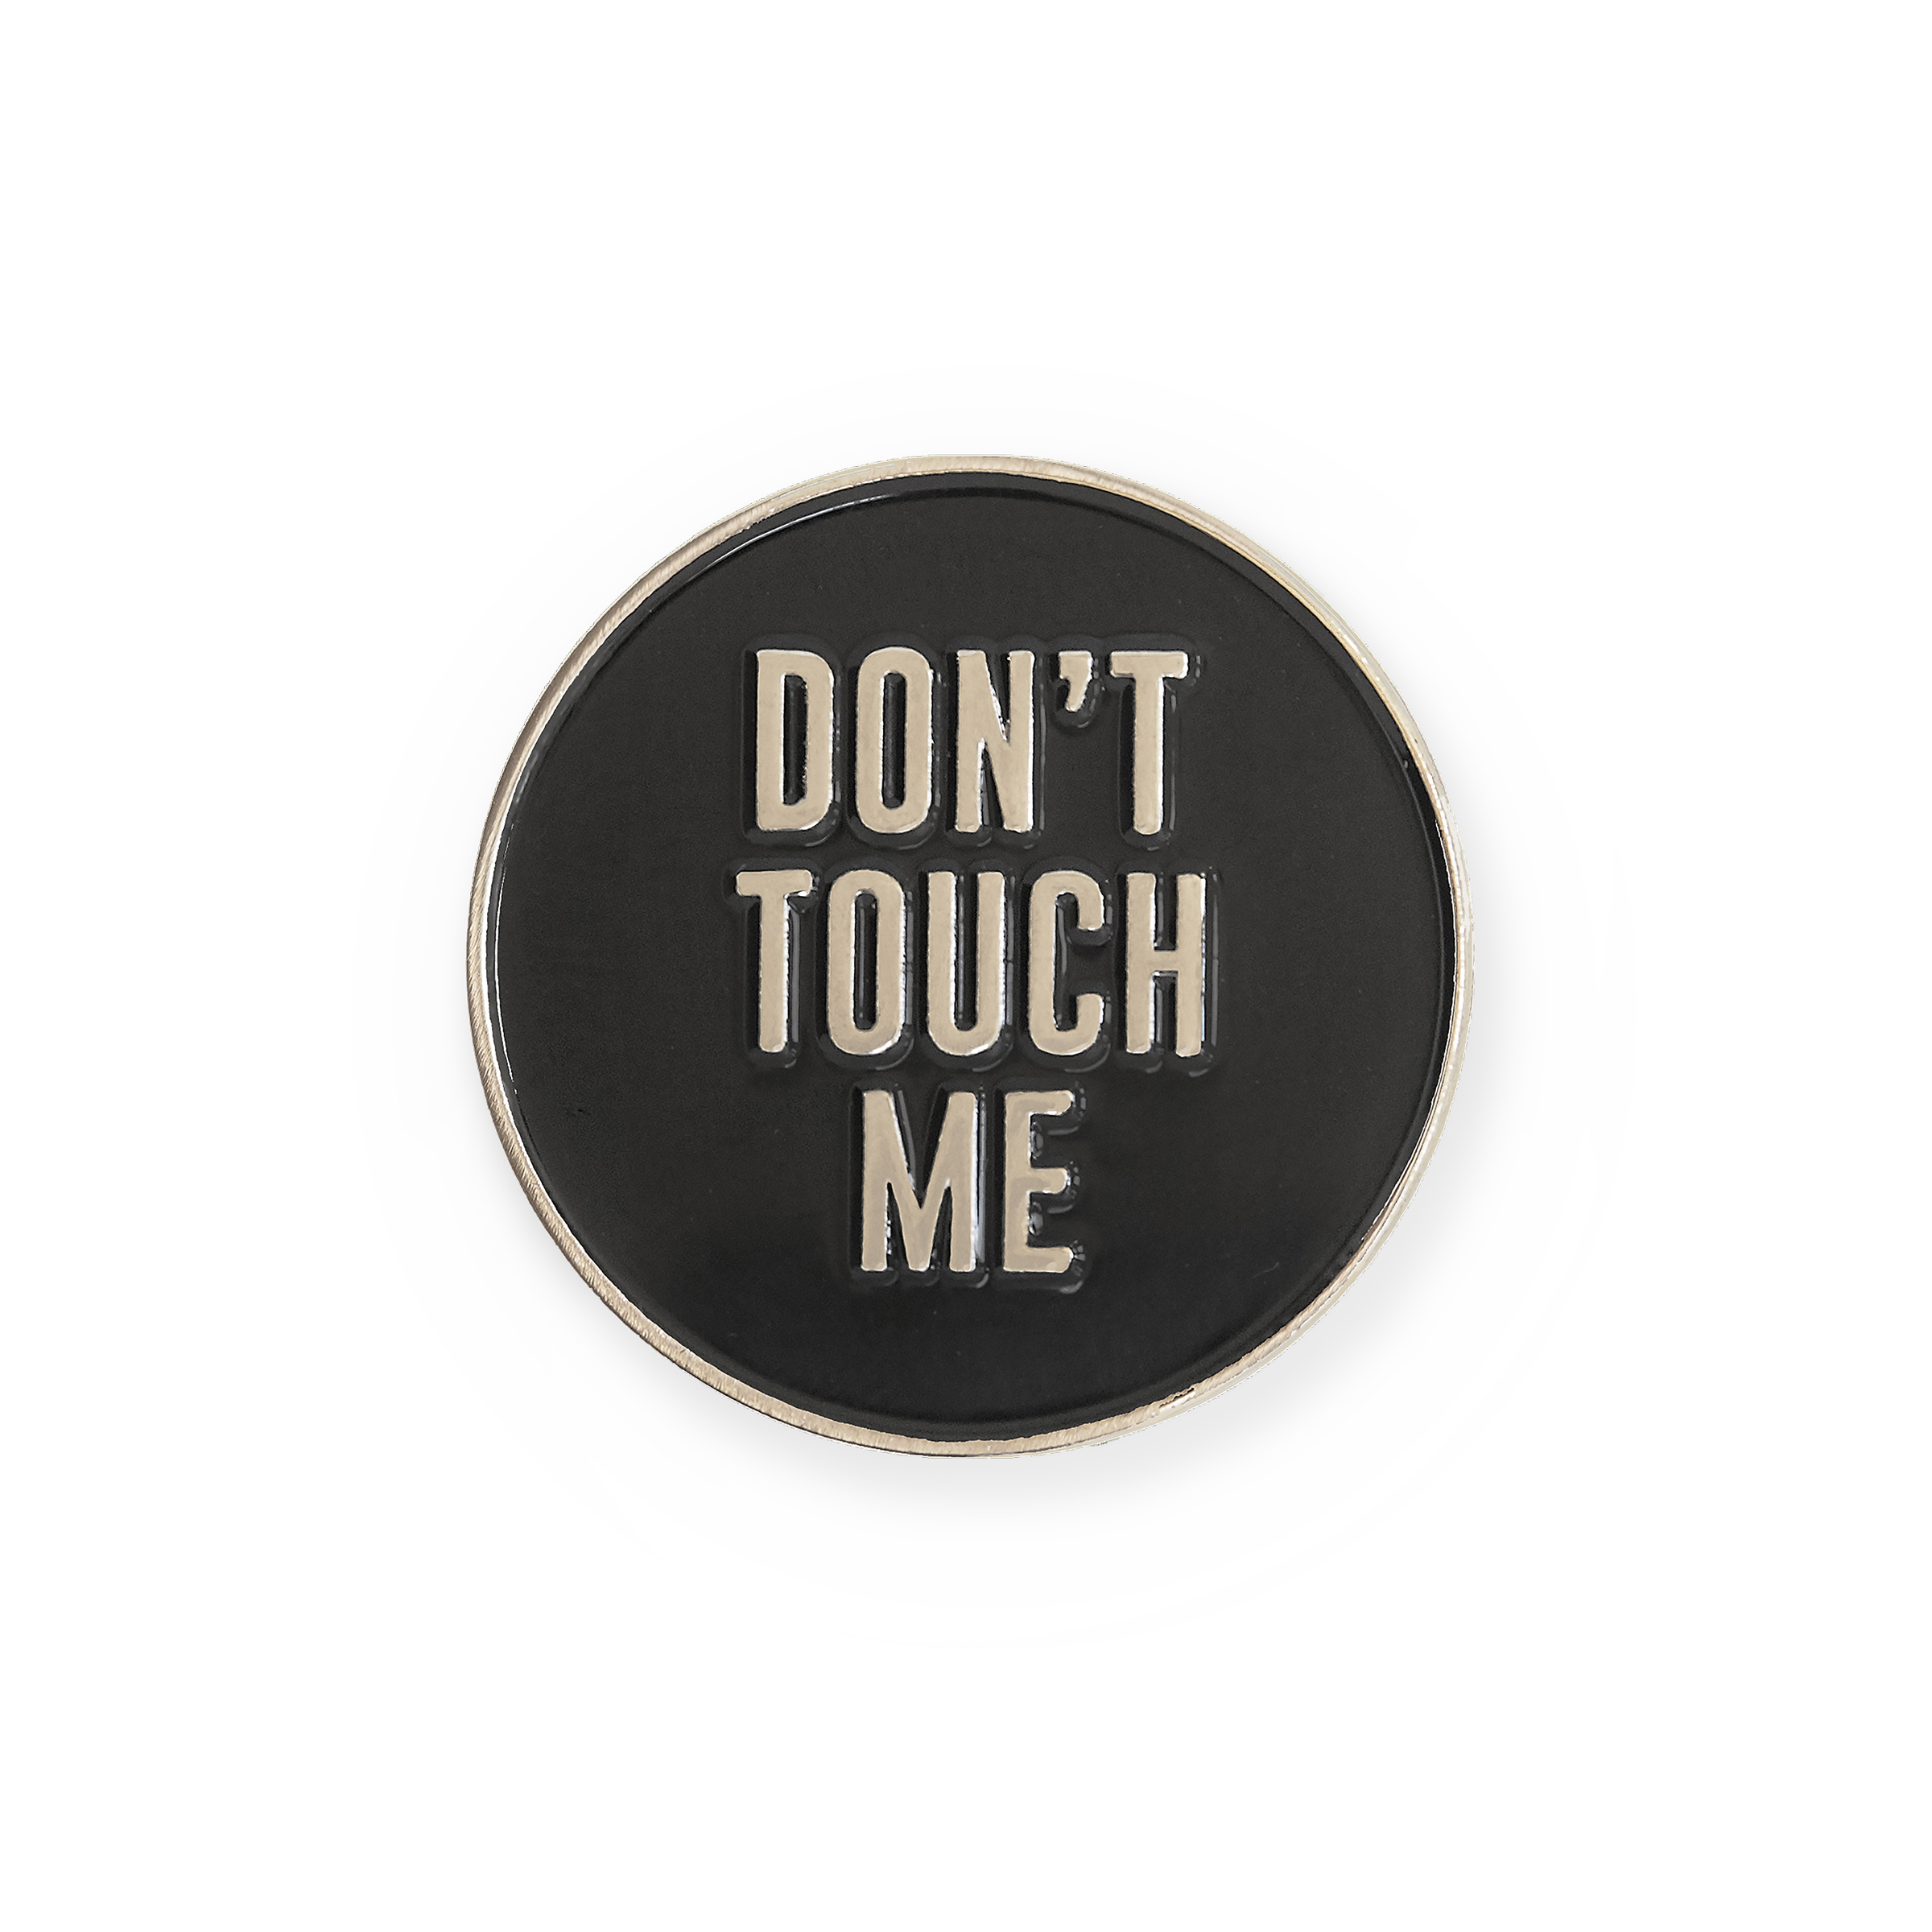 Плиз донт май. Донт тач. Don't Touch!. Don't Touch me. Don't Touch надпись.